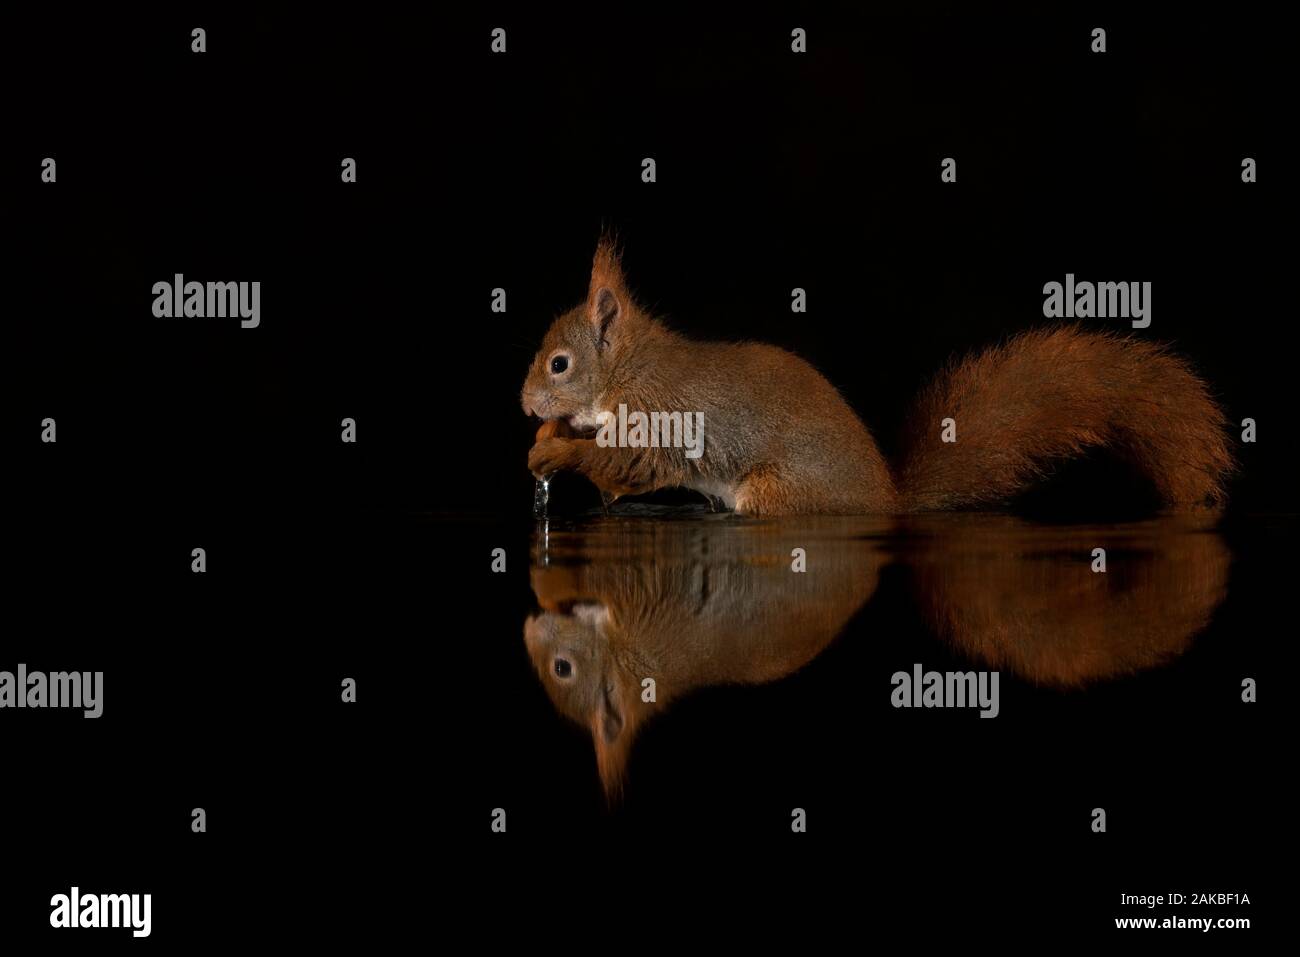 L'écureuil rouge eurasien (Sciurus vulgaris) mange une noisette dans une piscine d'eau dans la forêt de Drunen, aux Pays-Bas. Fond sombre Banque D'Images